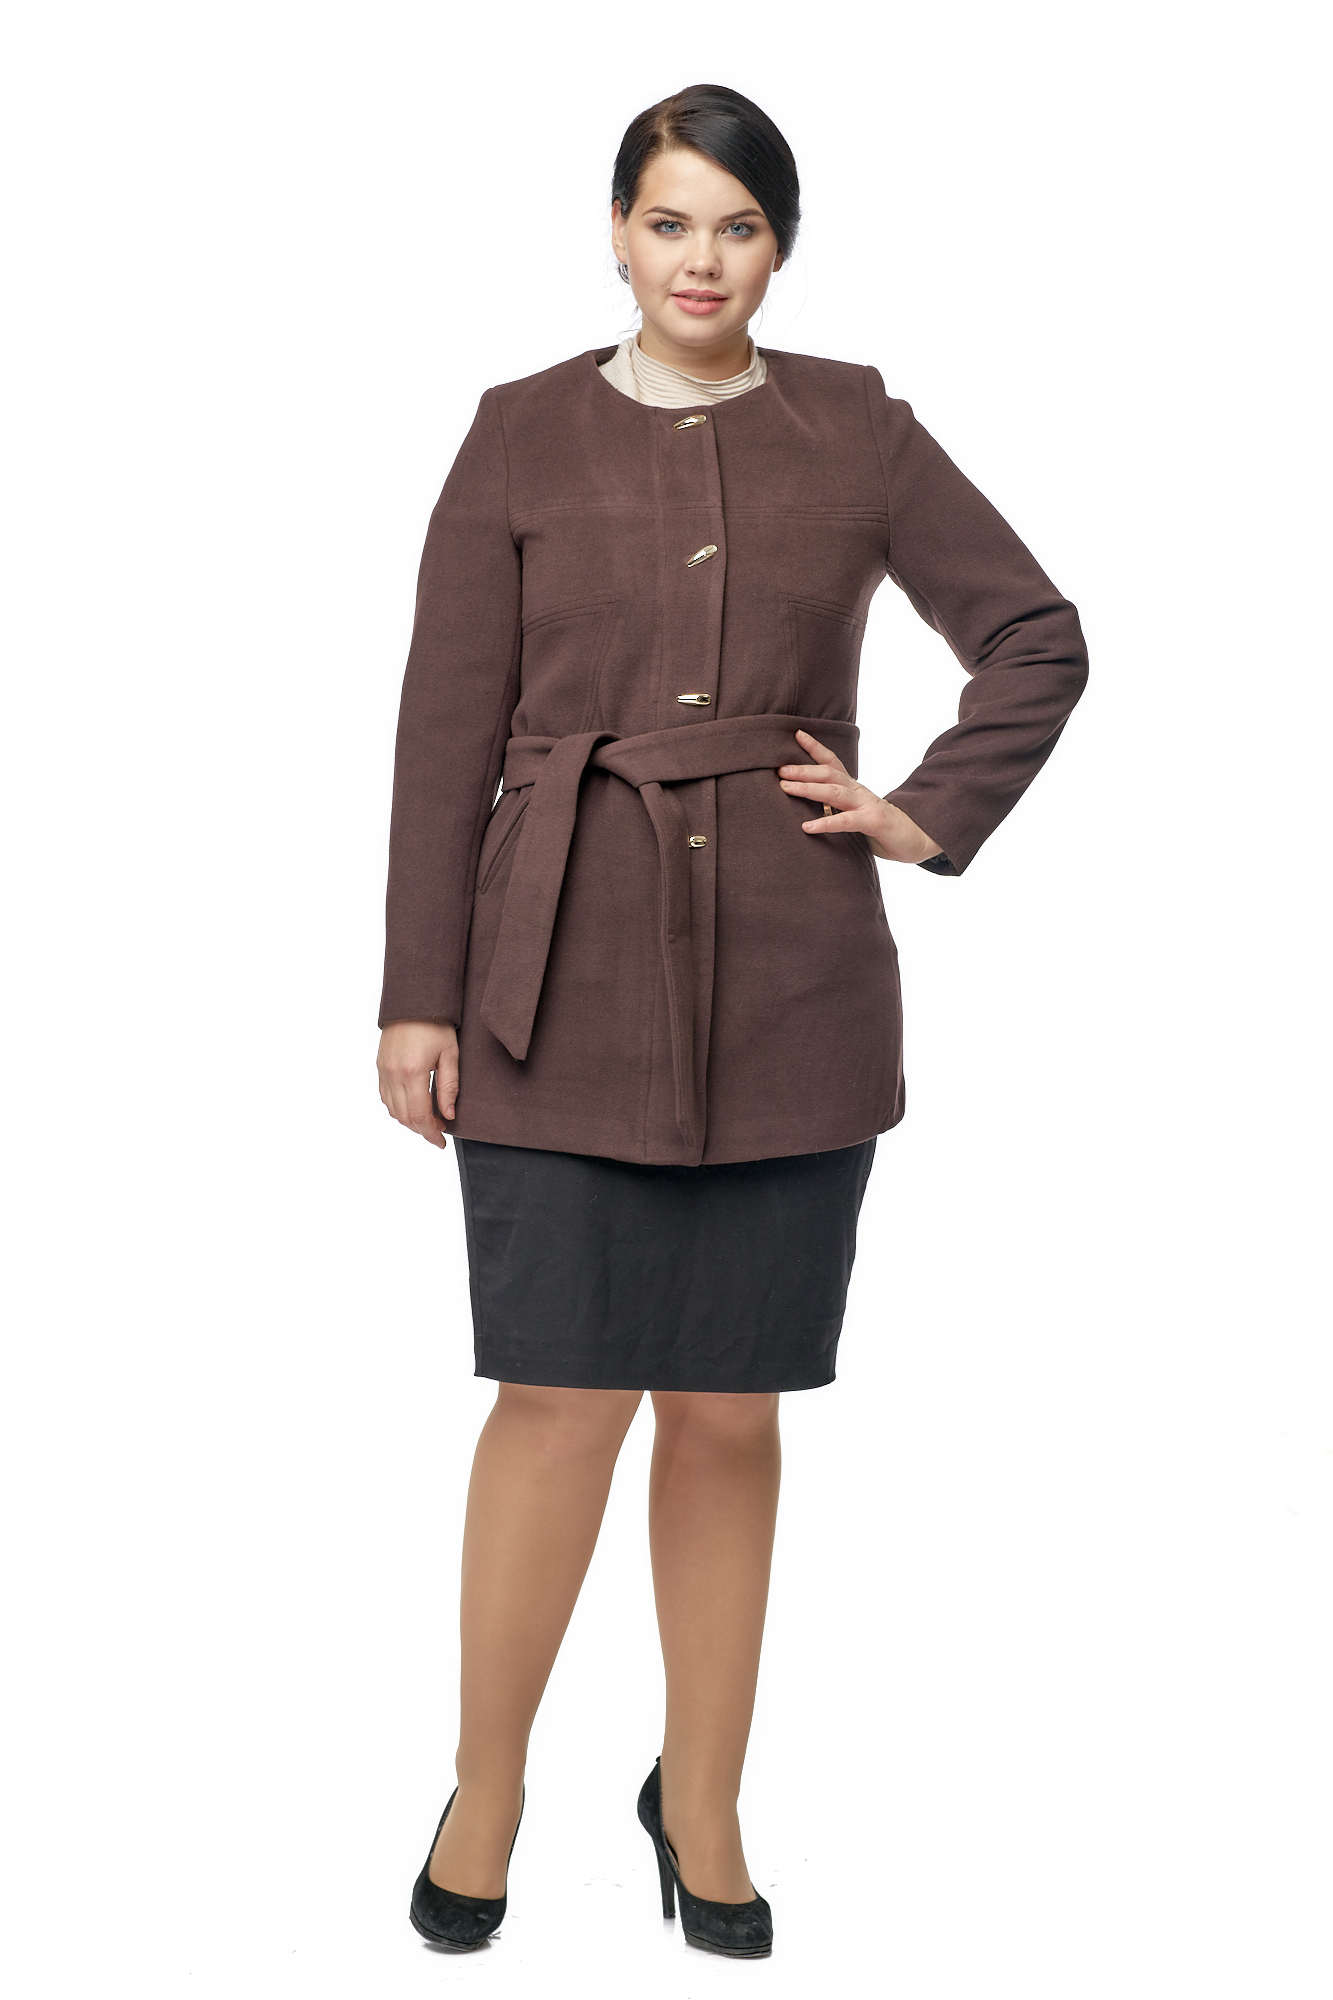 Пальто женское из текстиля с воротником 8002741-2